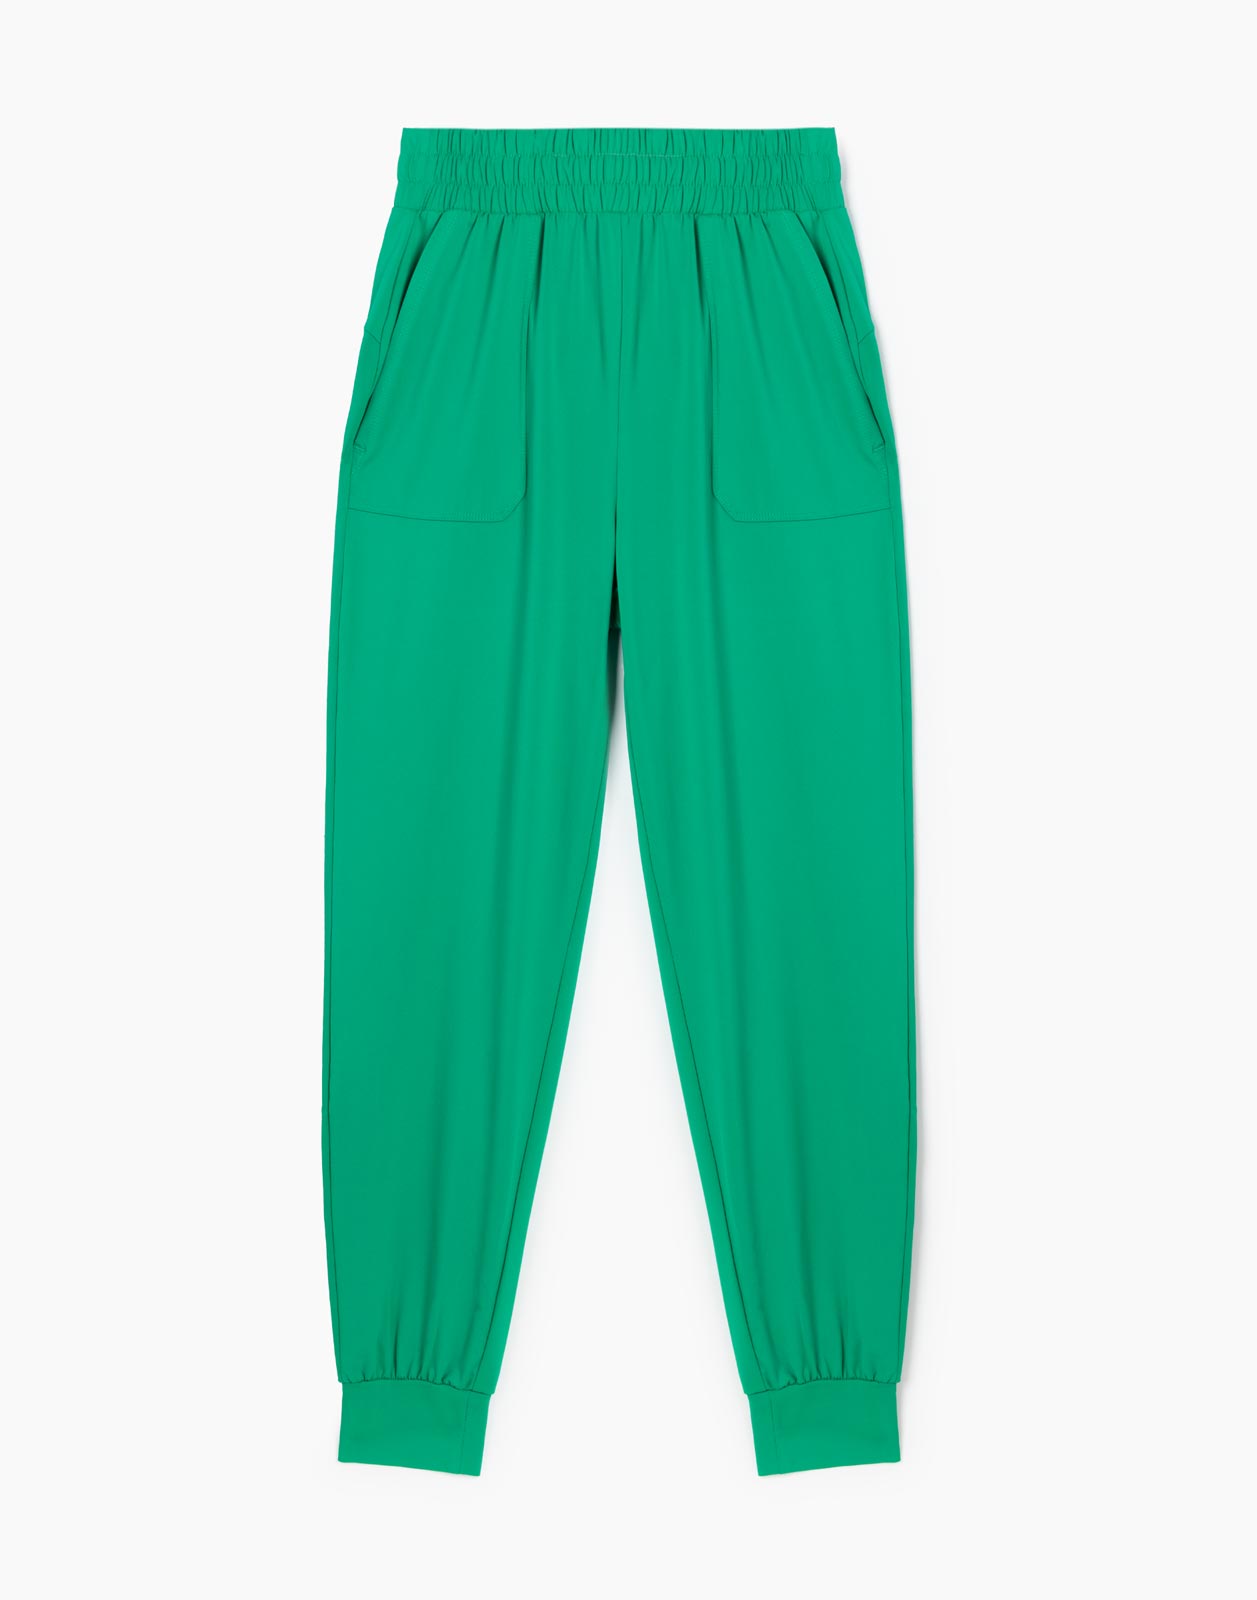 Зелёные спортивные брюки Jogger из микрофибры для девочки р.152